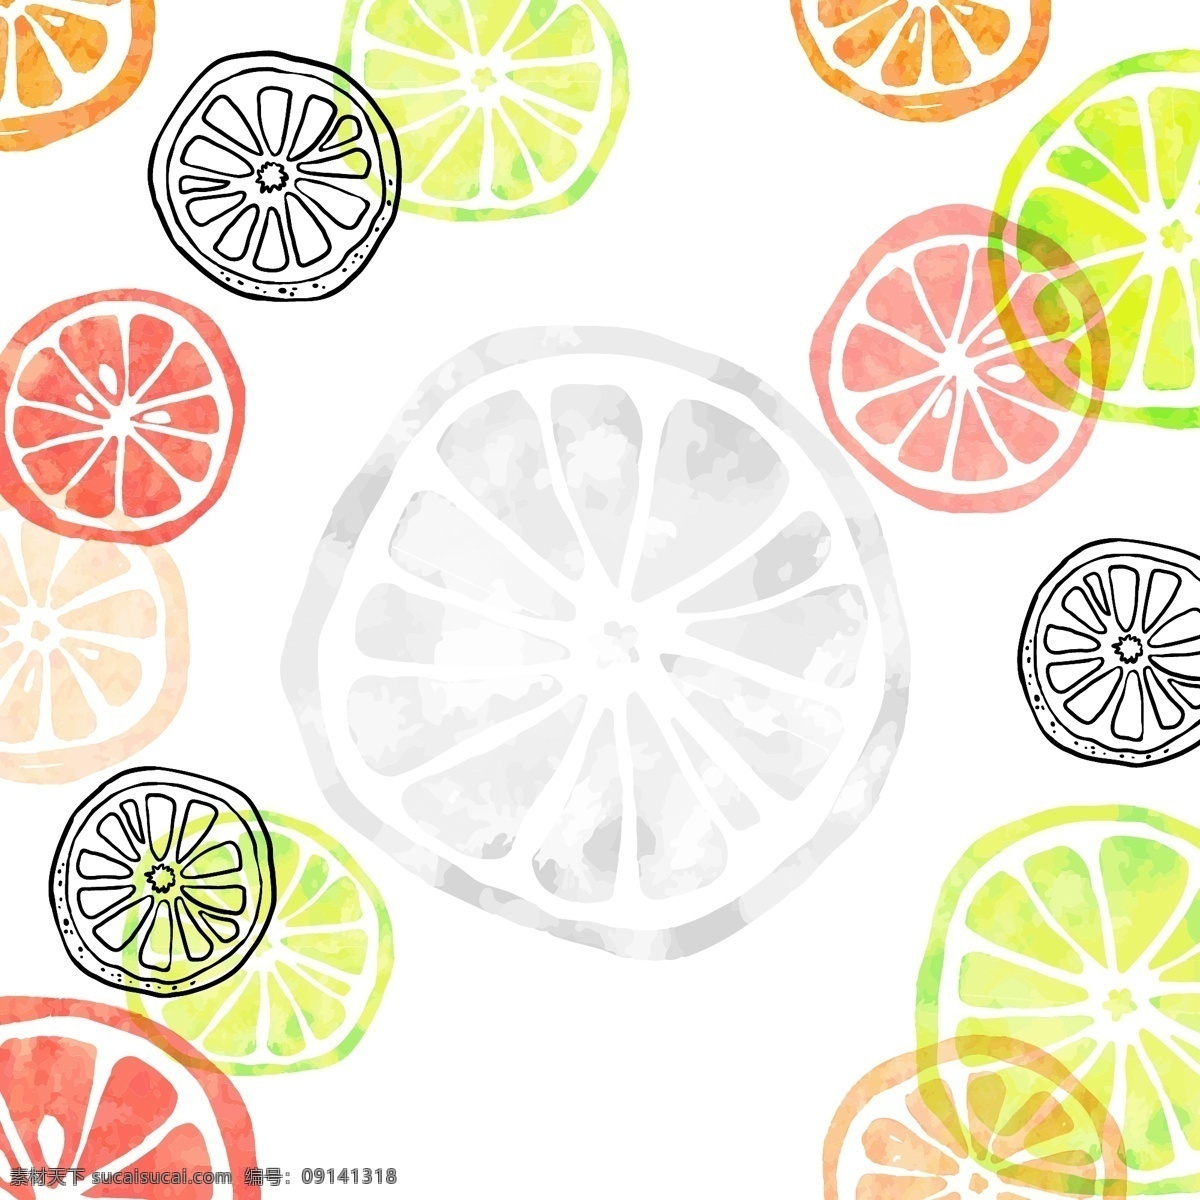 夏日 彩色 橙子 背景 海报 夏季 橙子剖面 彩色橙子 橙子背景 柠檬背景 夏季背景图片 夏季海报背景 白色